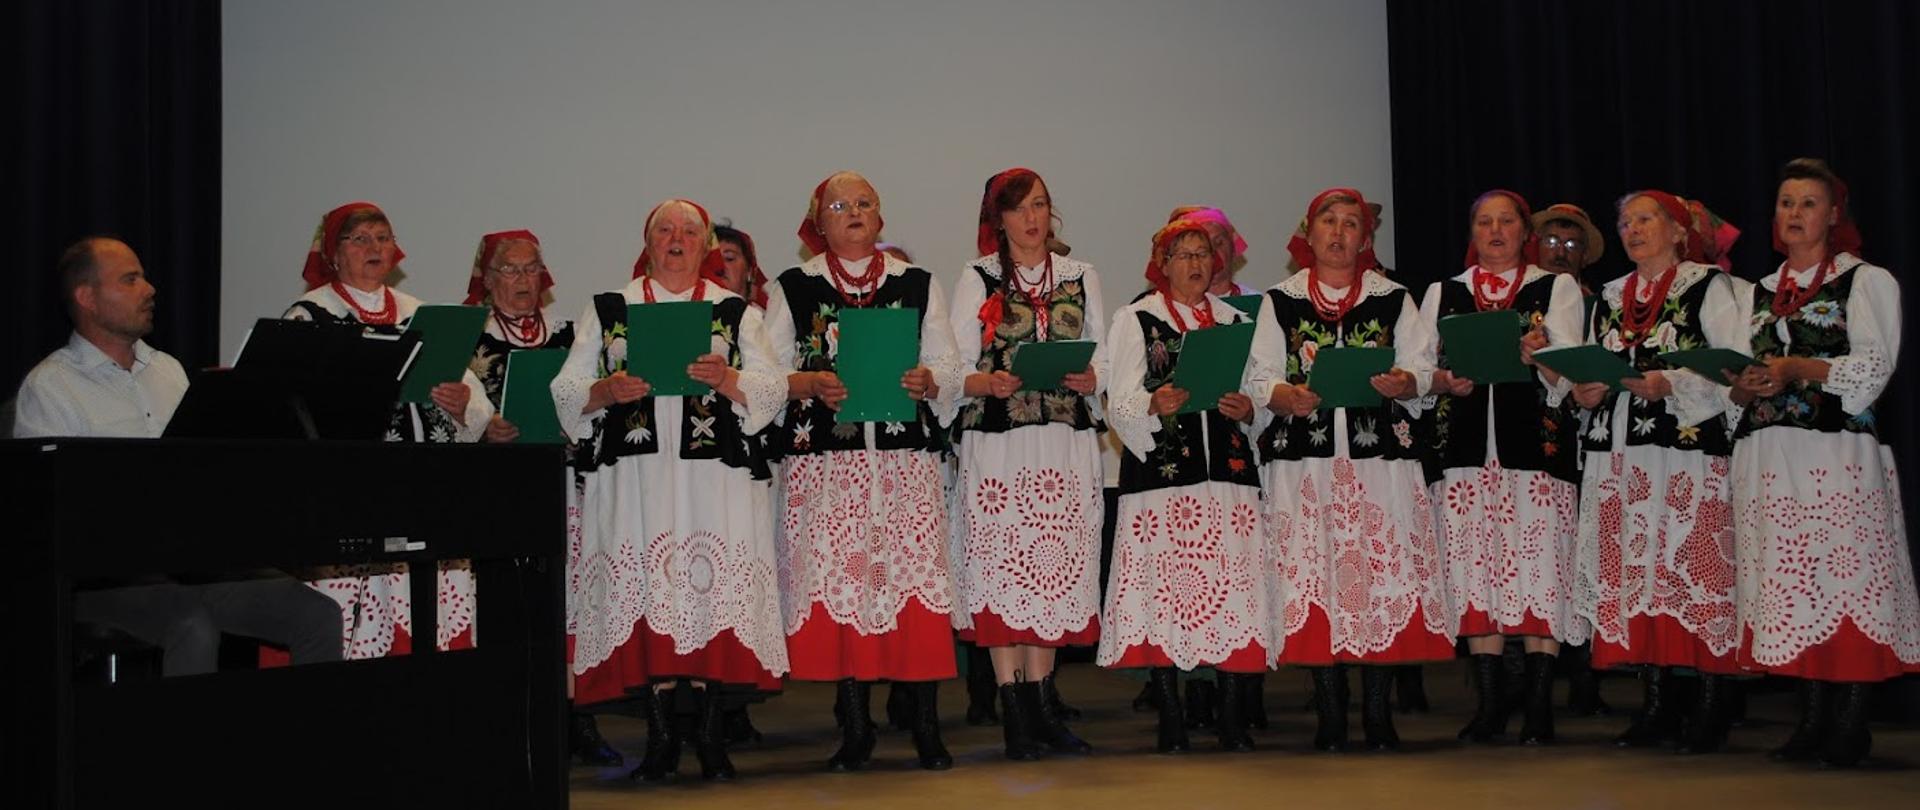 zespół kobiet ubranych w kolorowe ludowe stroje, śpiewających na scenie